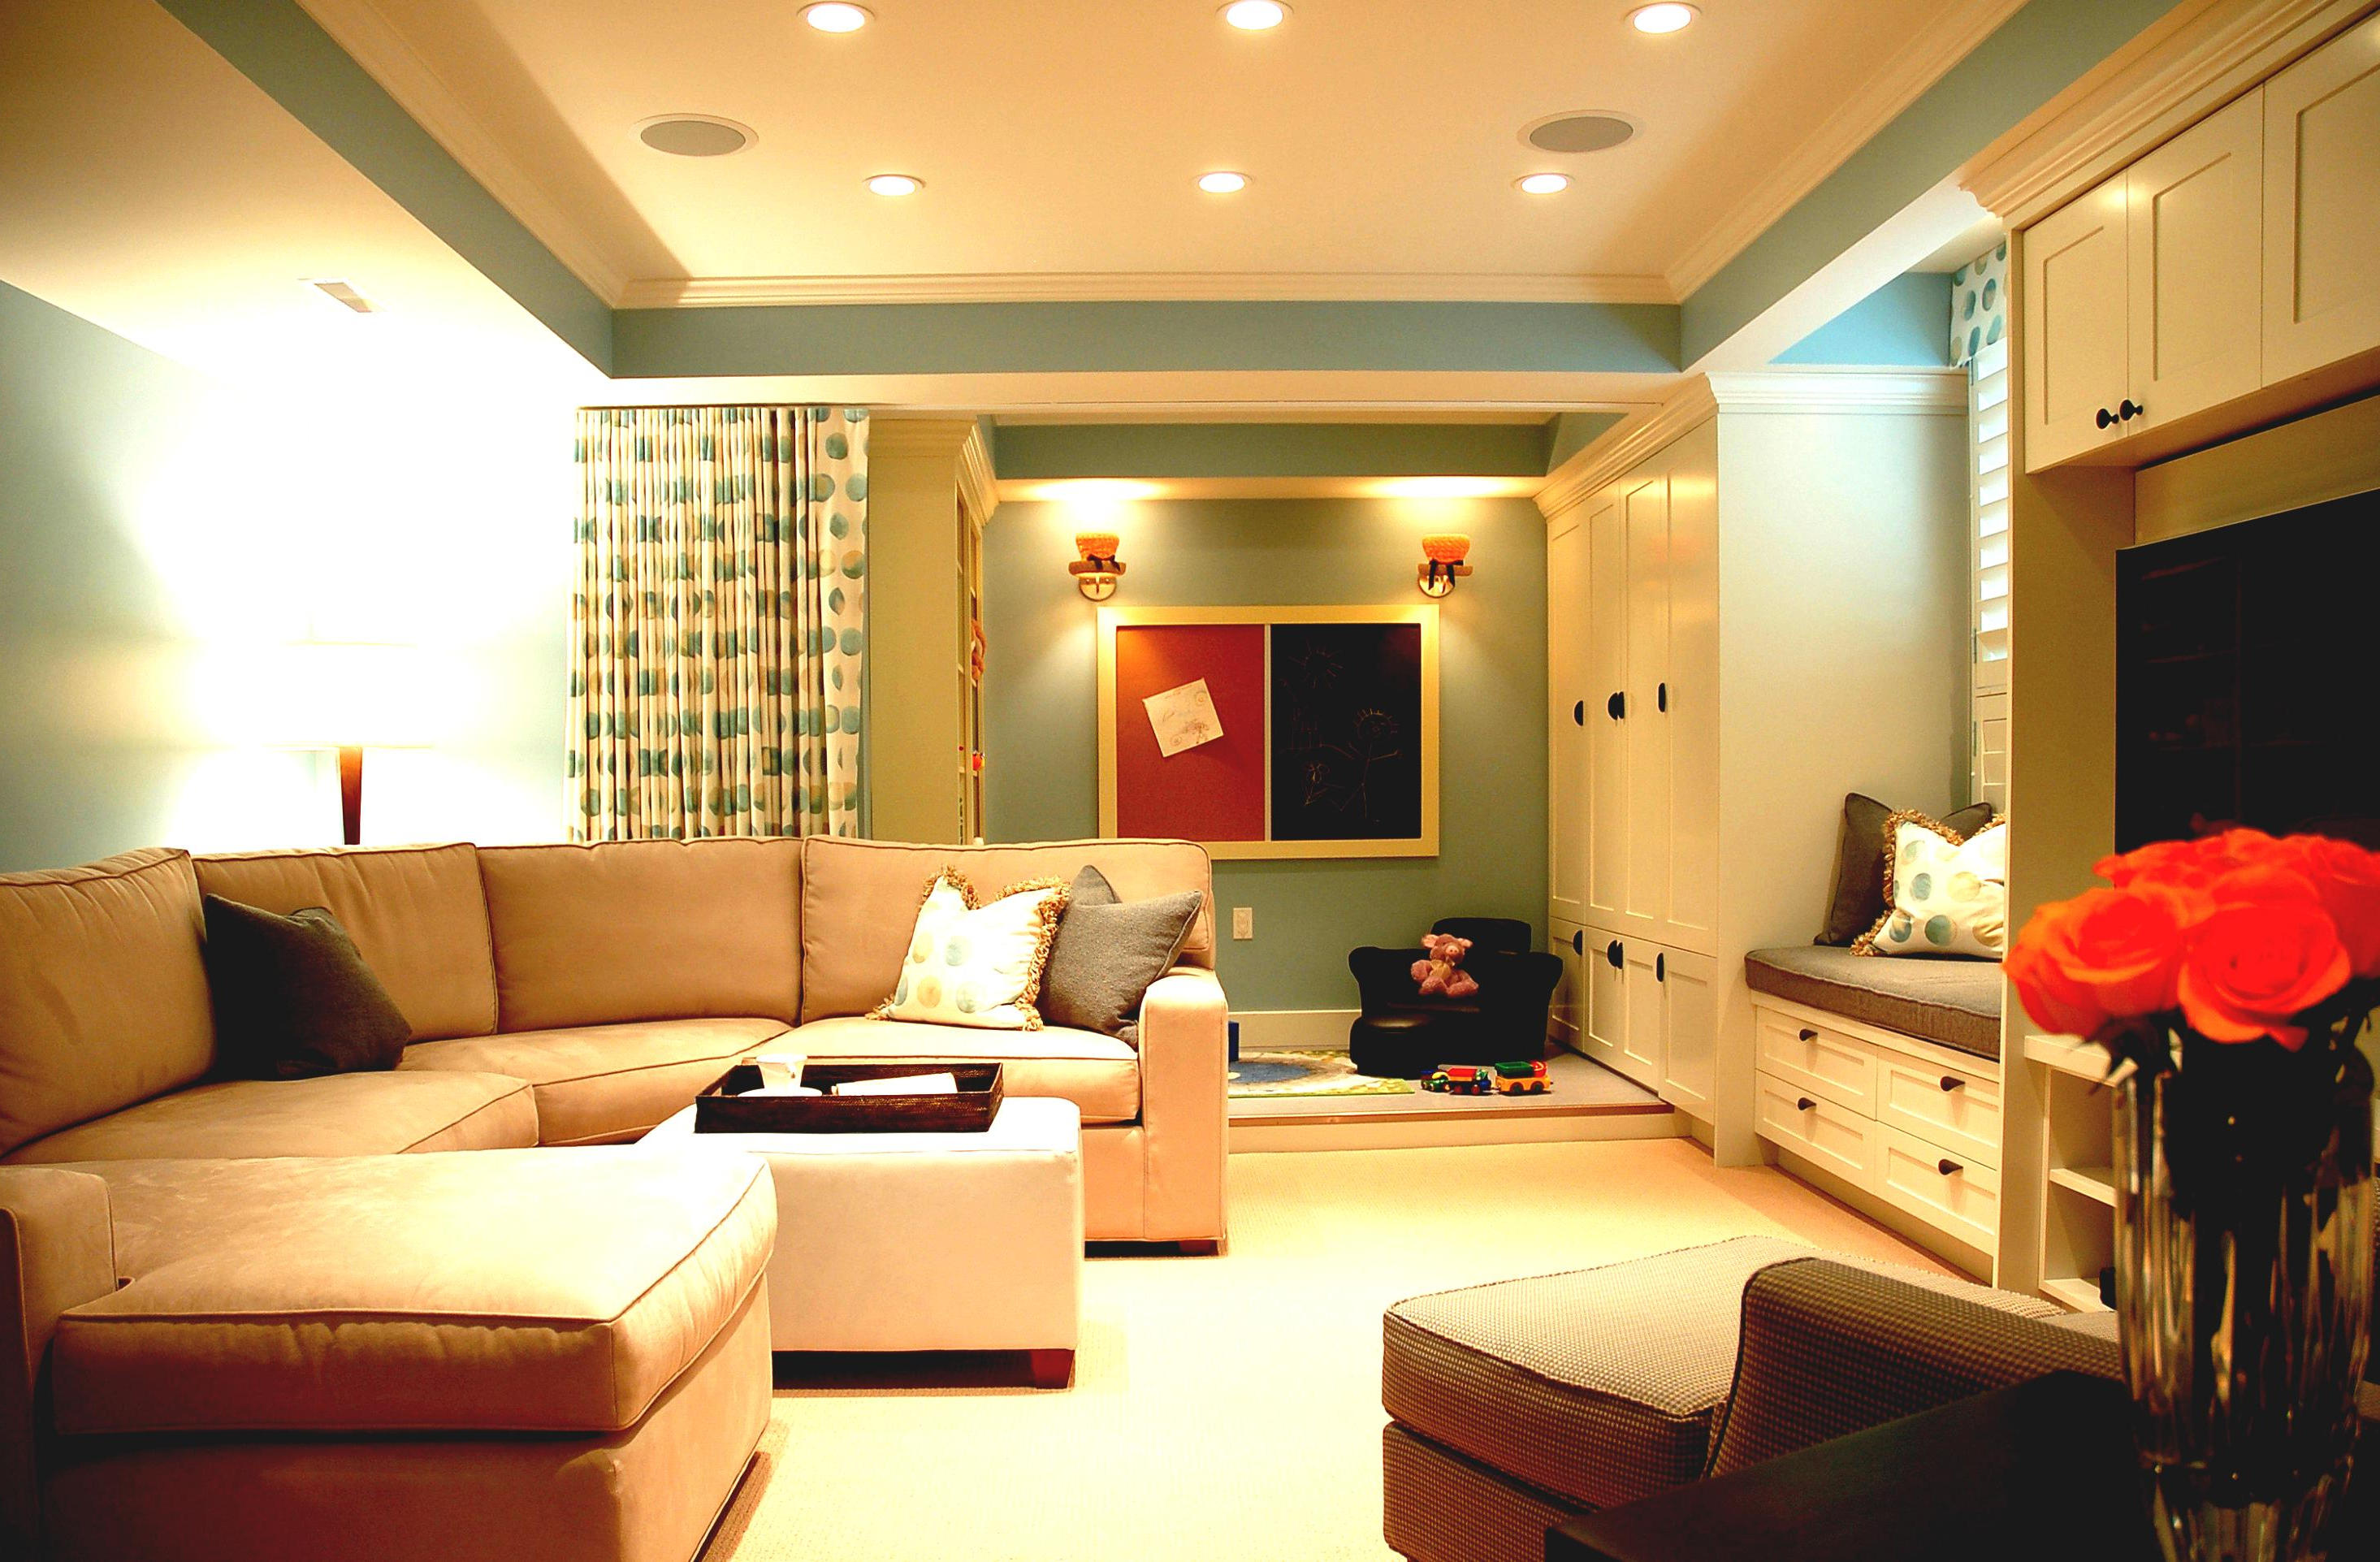 Living Room Lighting Ideas Original Home Designs - Reverasite